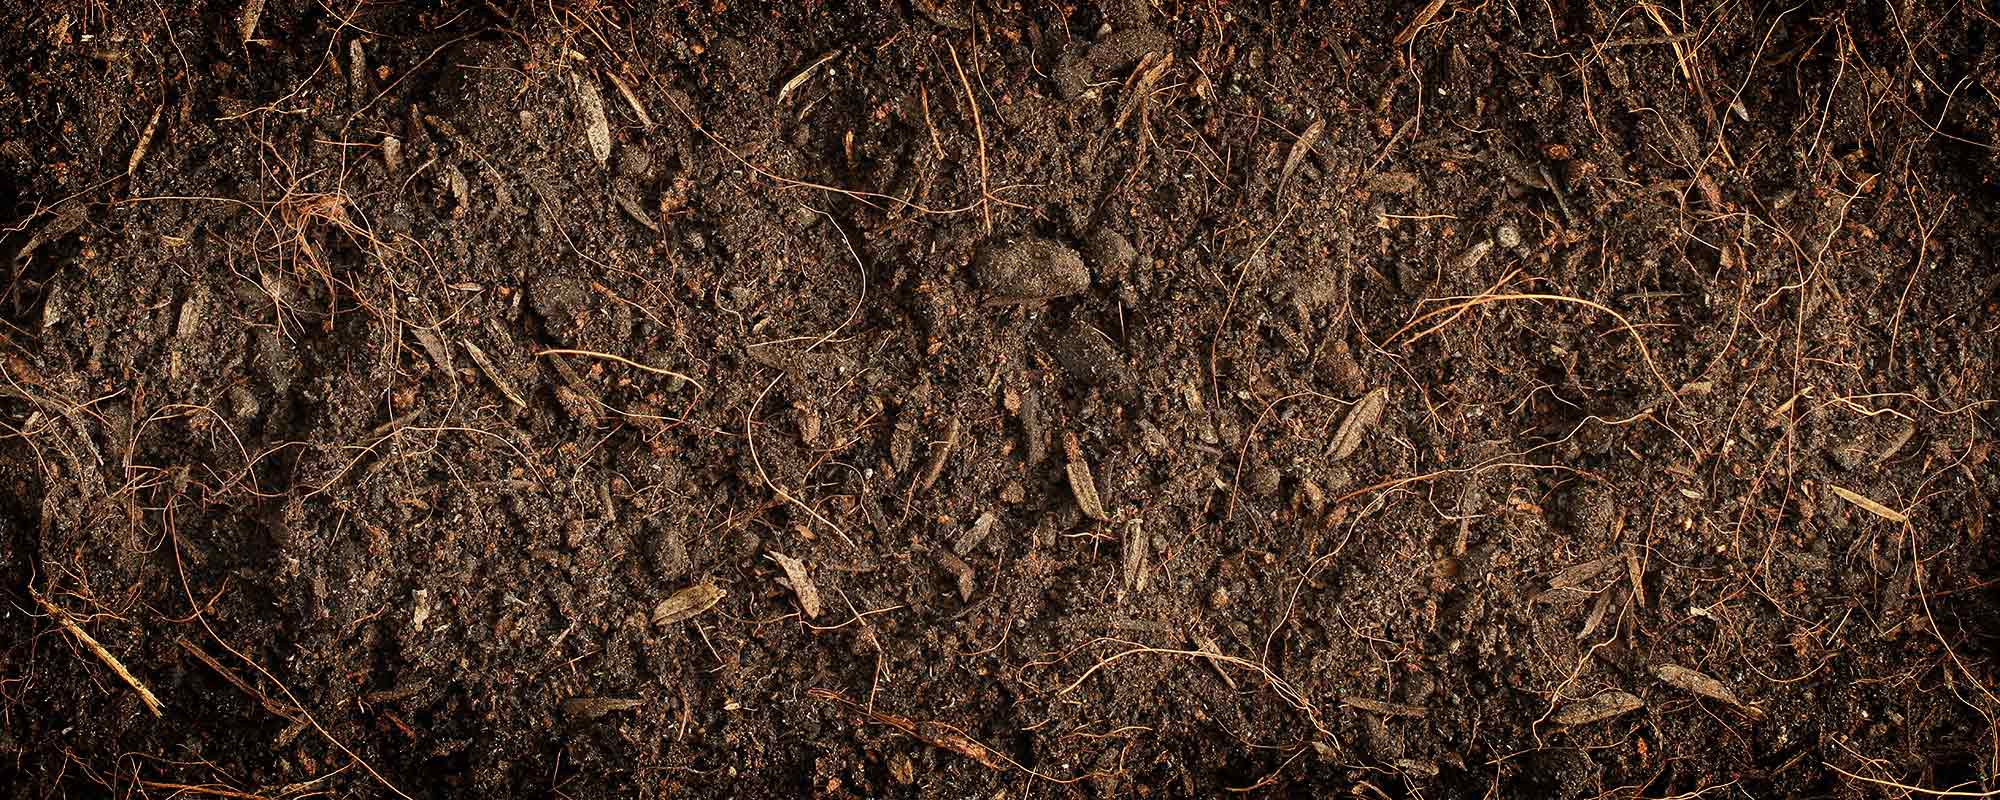 有机物在土壤中做什么